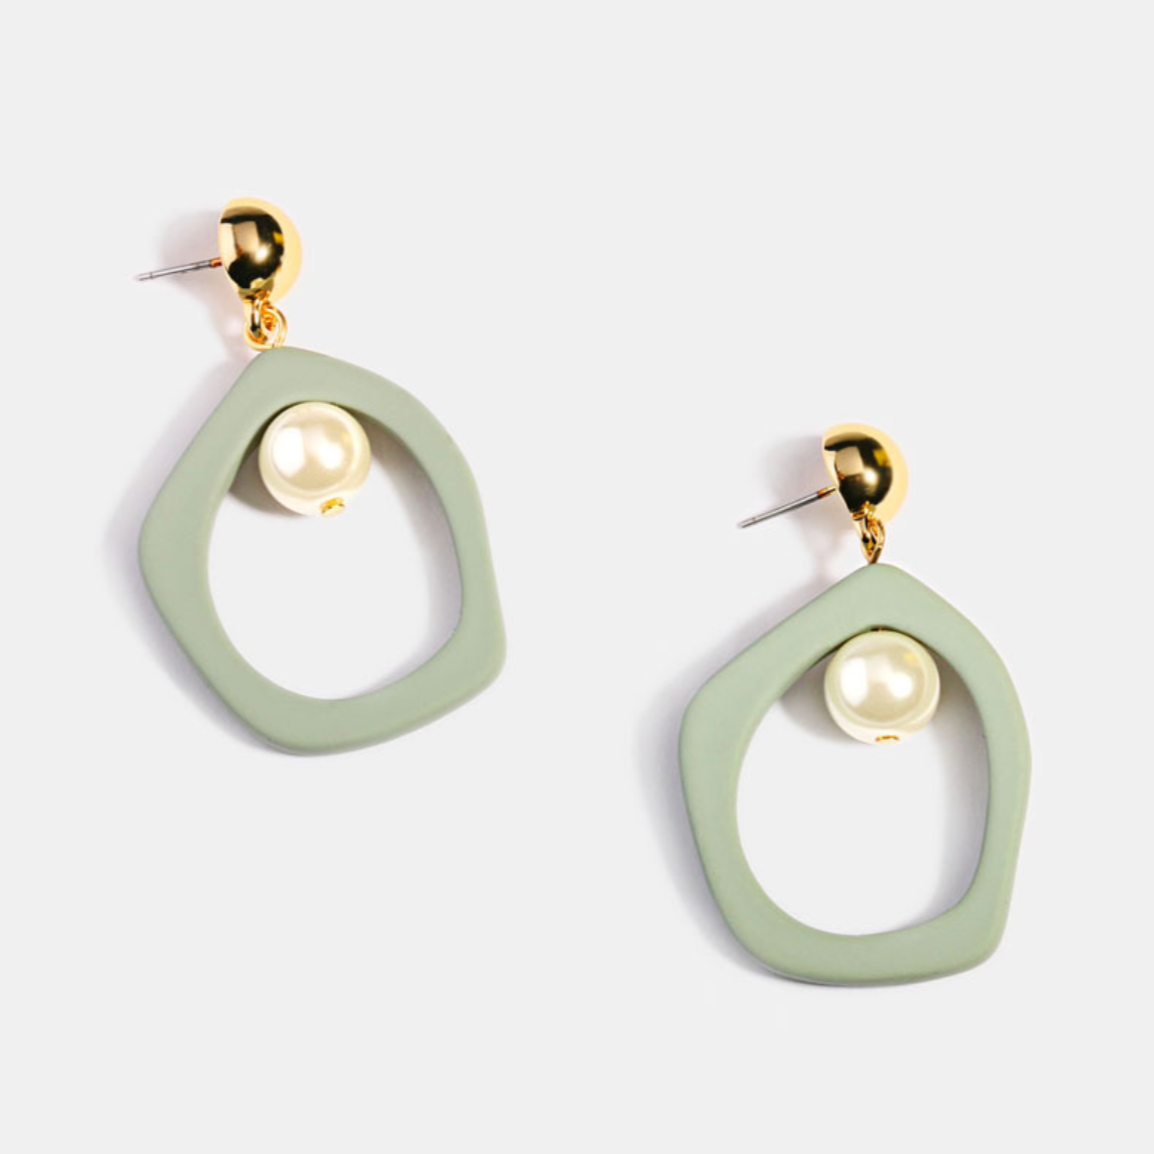 Turquoise Pearl Earrings